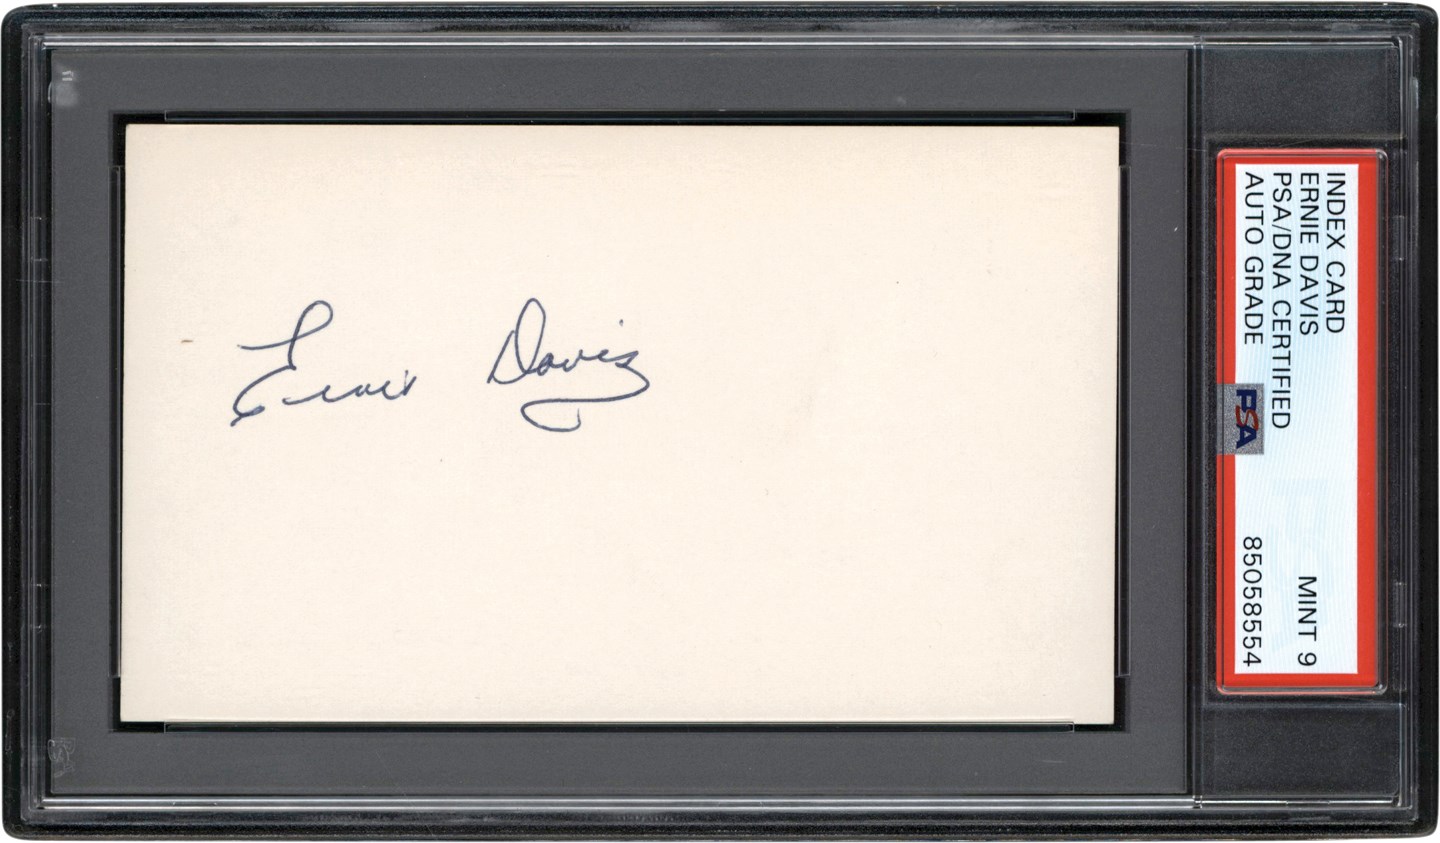 - Gorgeous Ernie Davis Signed Index Card (PSA MINT 9)